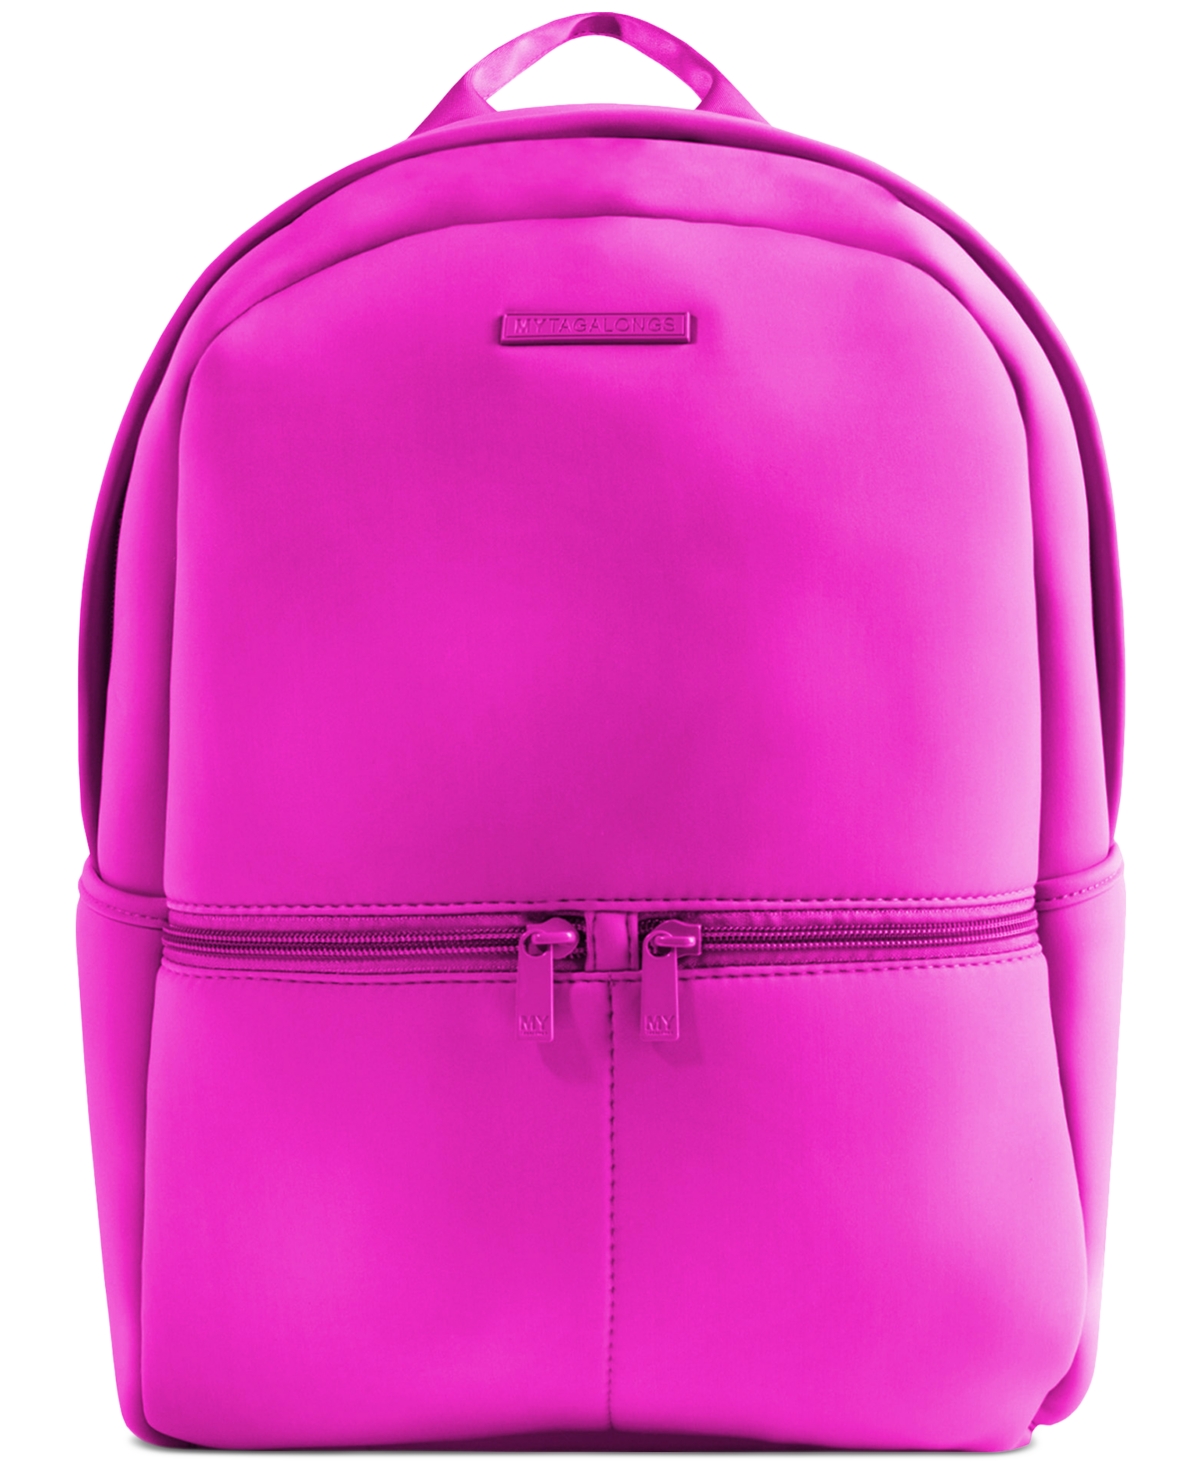 Mytagalongs Everleigh Neoprene Zippered Backpack In Pink